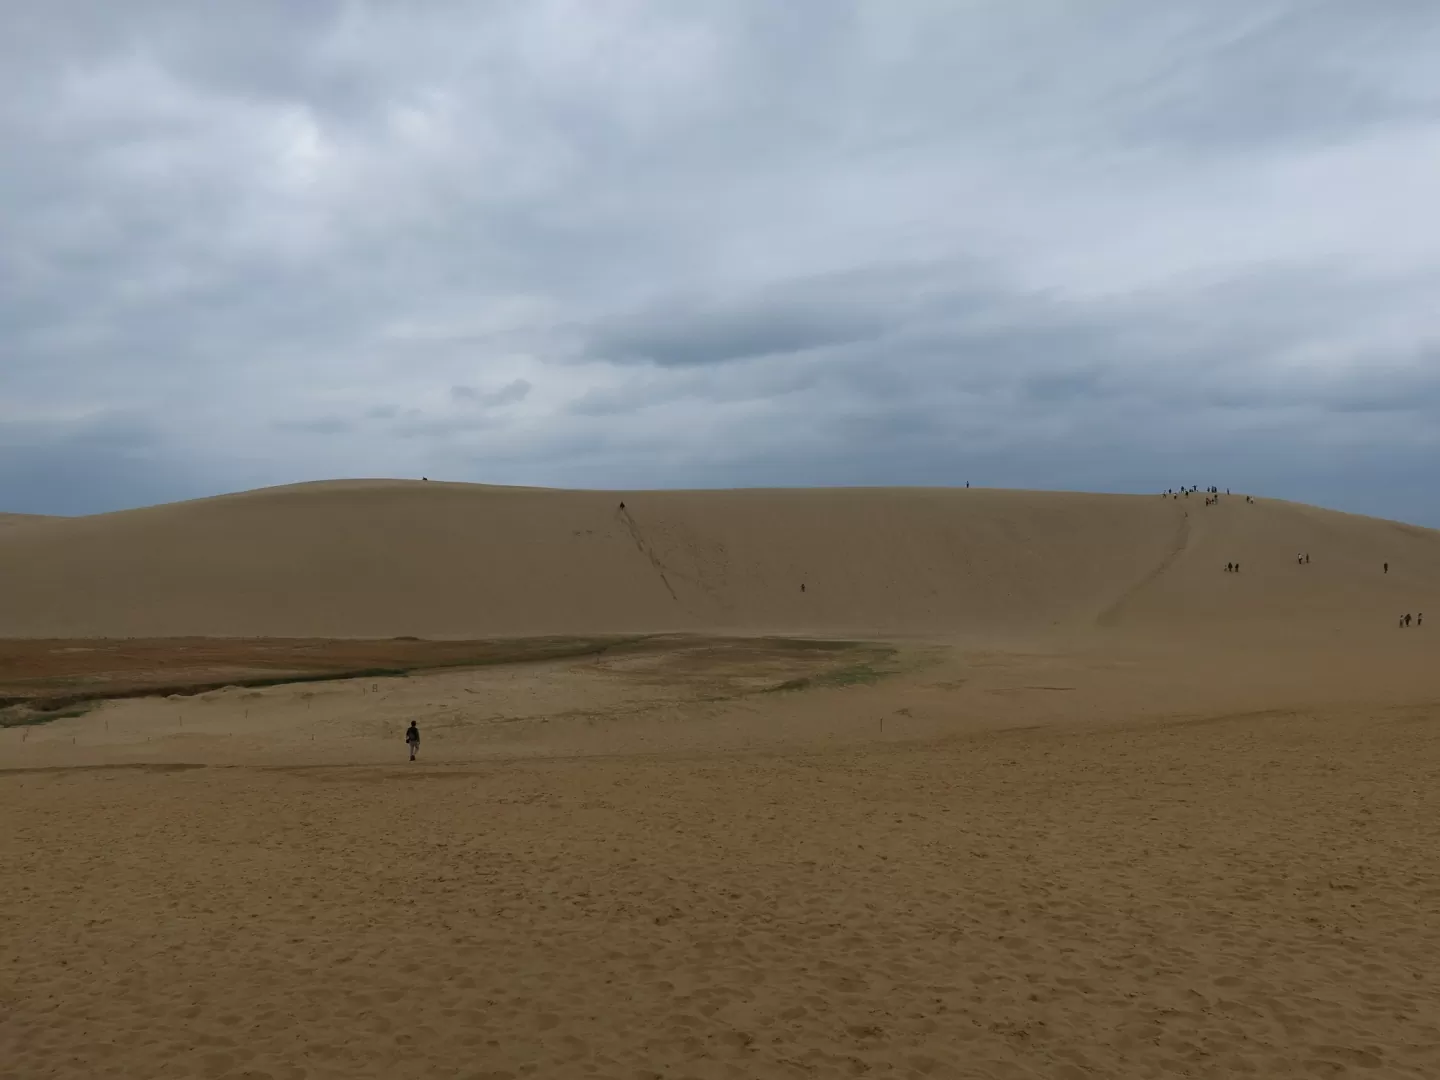 鳥取砂丘 砂丘入口から先に進んだところにある大きな砂山